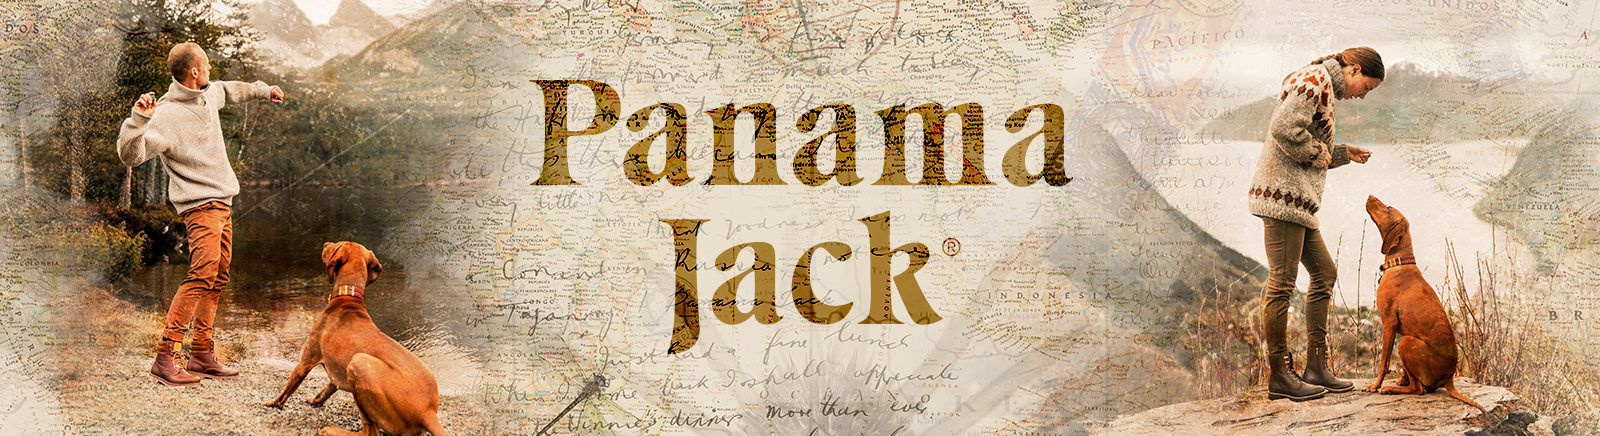 Panama Jack Herrenschue online entdecken im Juppen Schuhe Shop